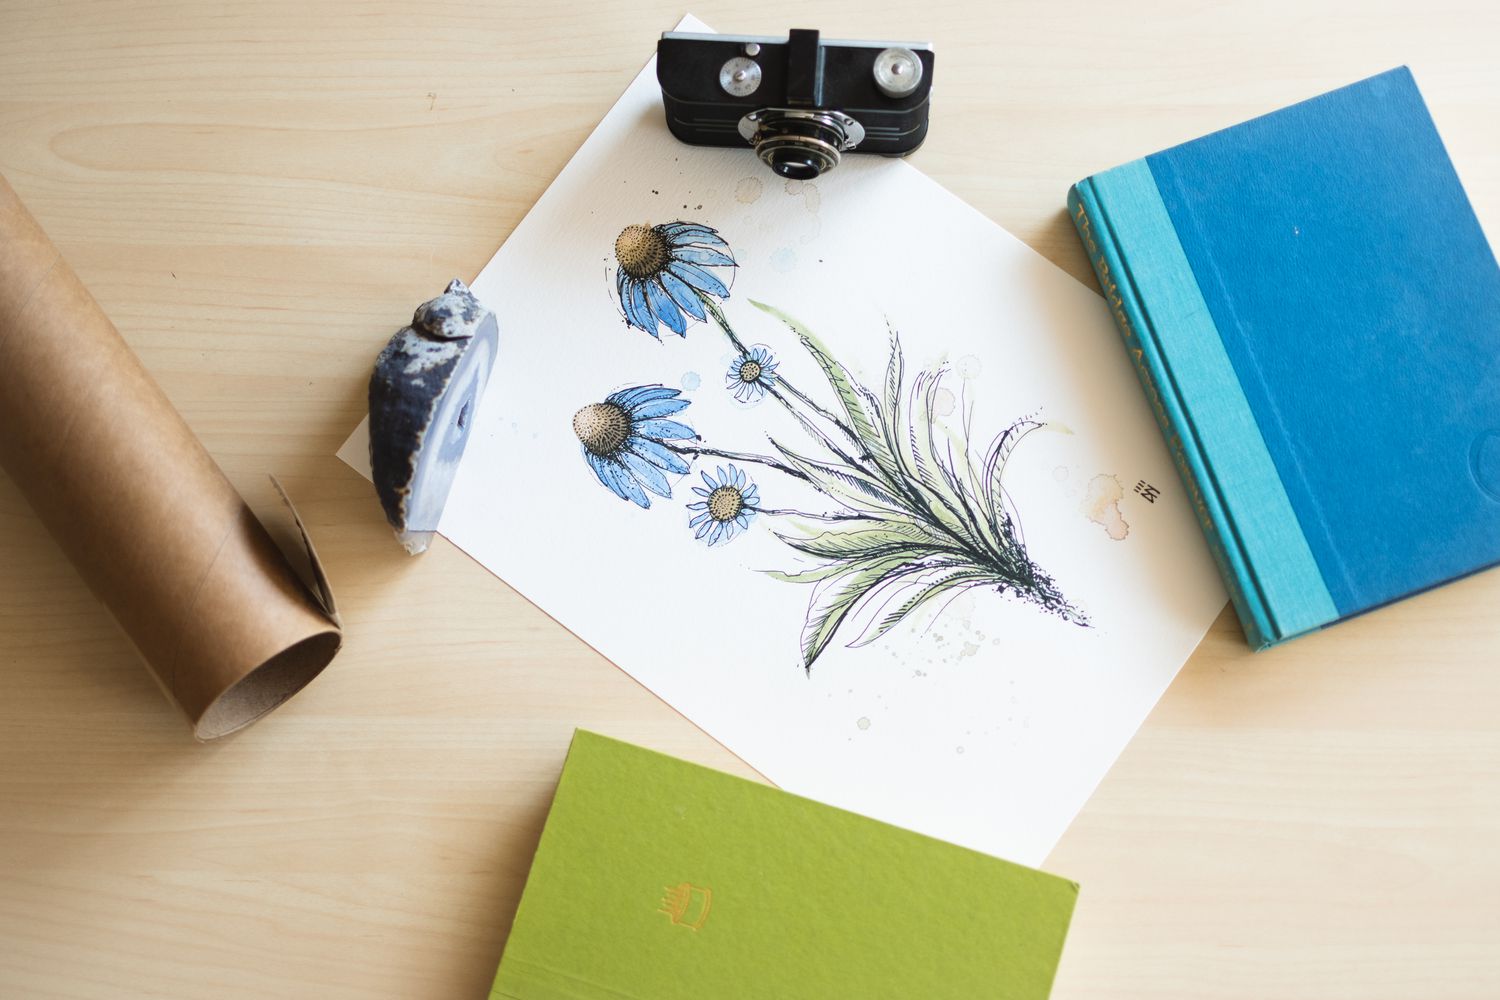 Affiche avec des fleurs bleues disposées sur une surface avec un appareil photo, des livres et un rocher pour aplatir 